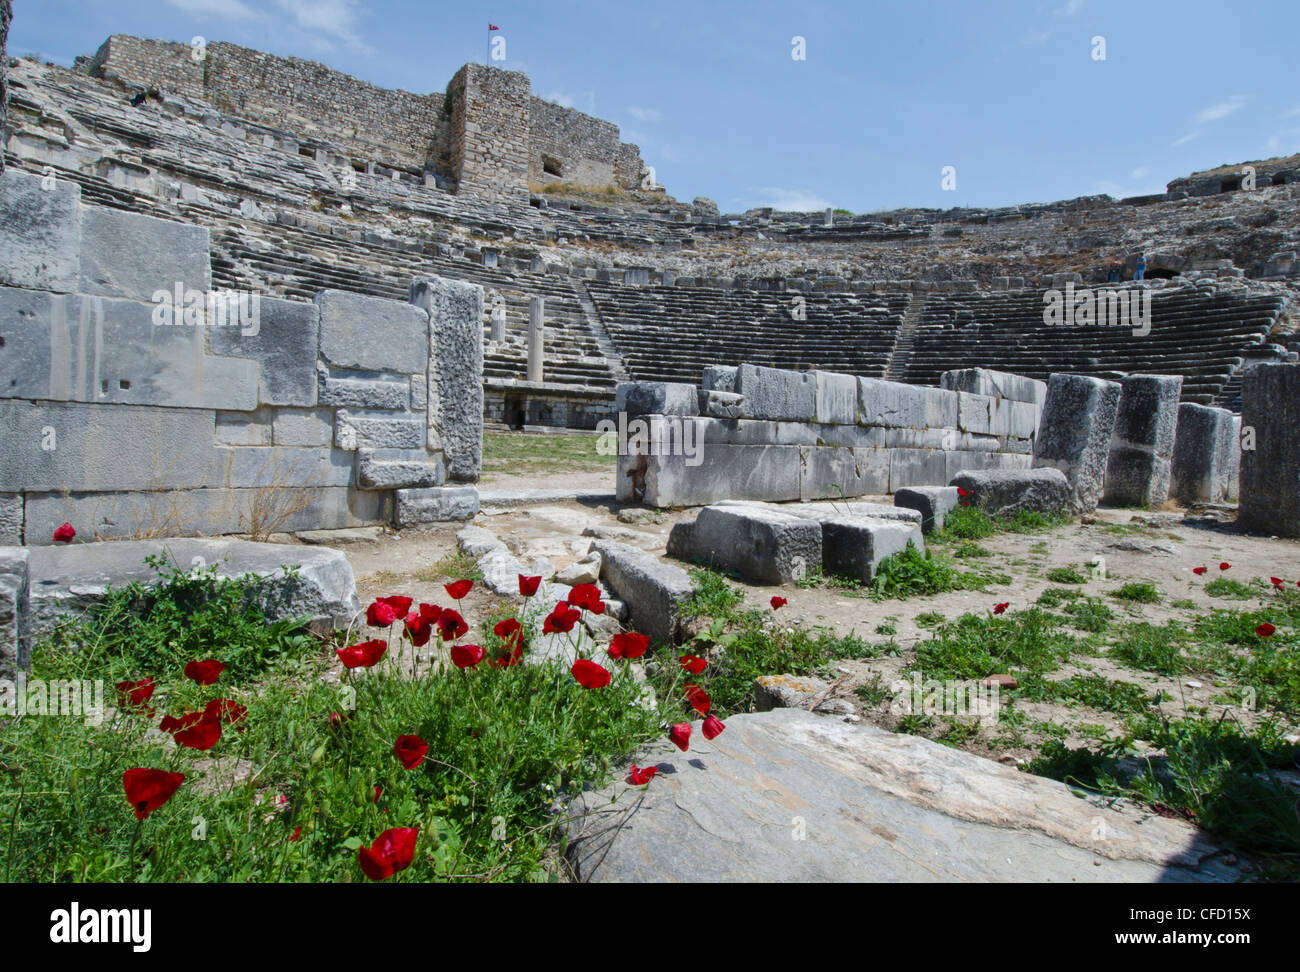 Amphitheater in Milet, eine antike griechische Stadt an der Westküste von Anatolien, Türkei. Stockfoto